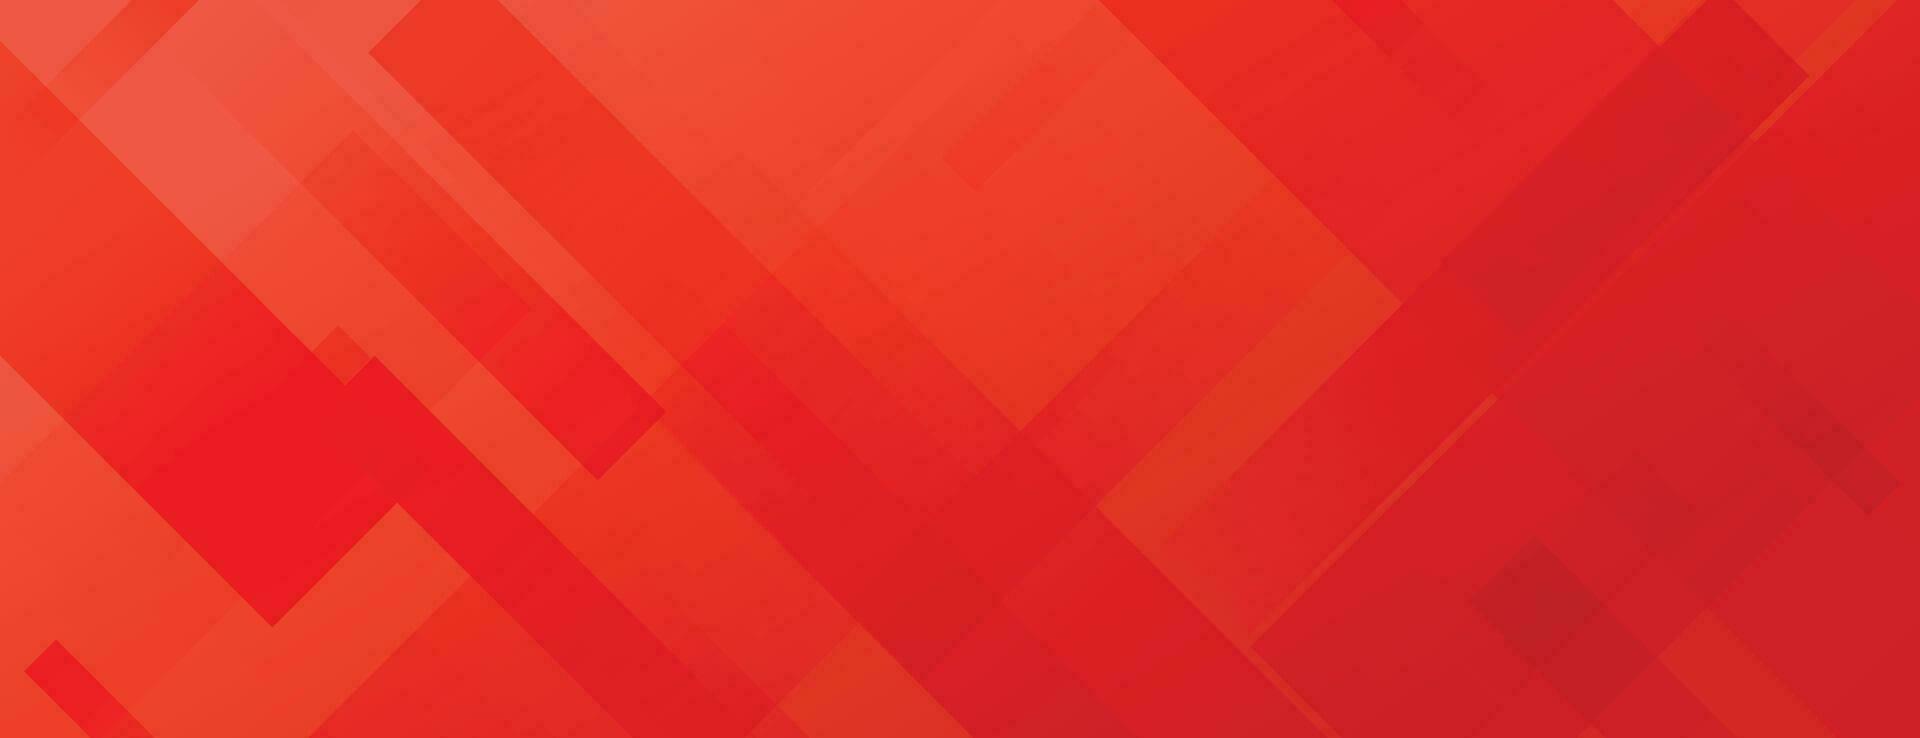 abstract rood achtergrond met diagonaal lijnen vector